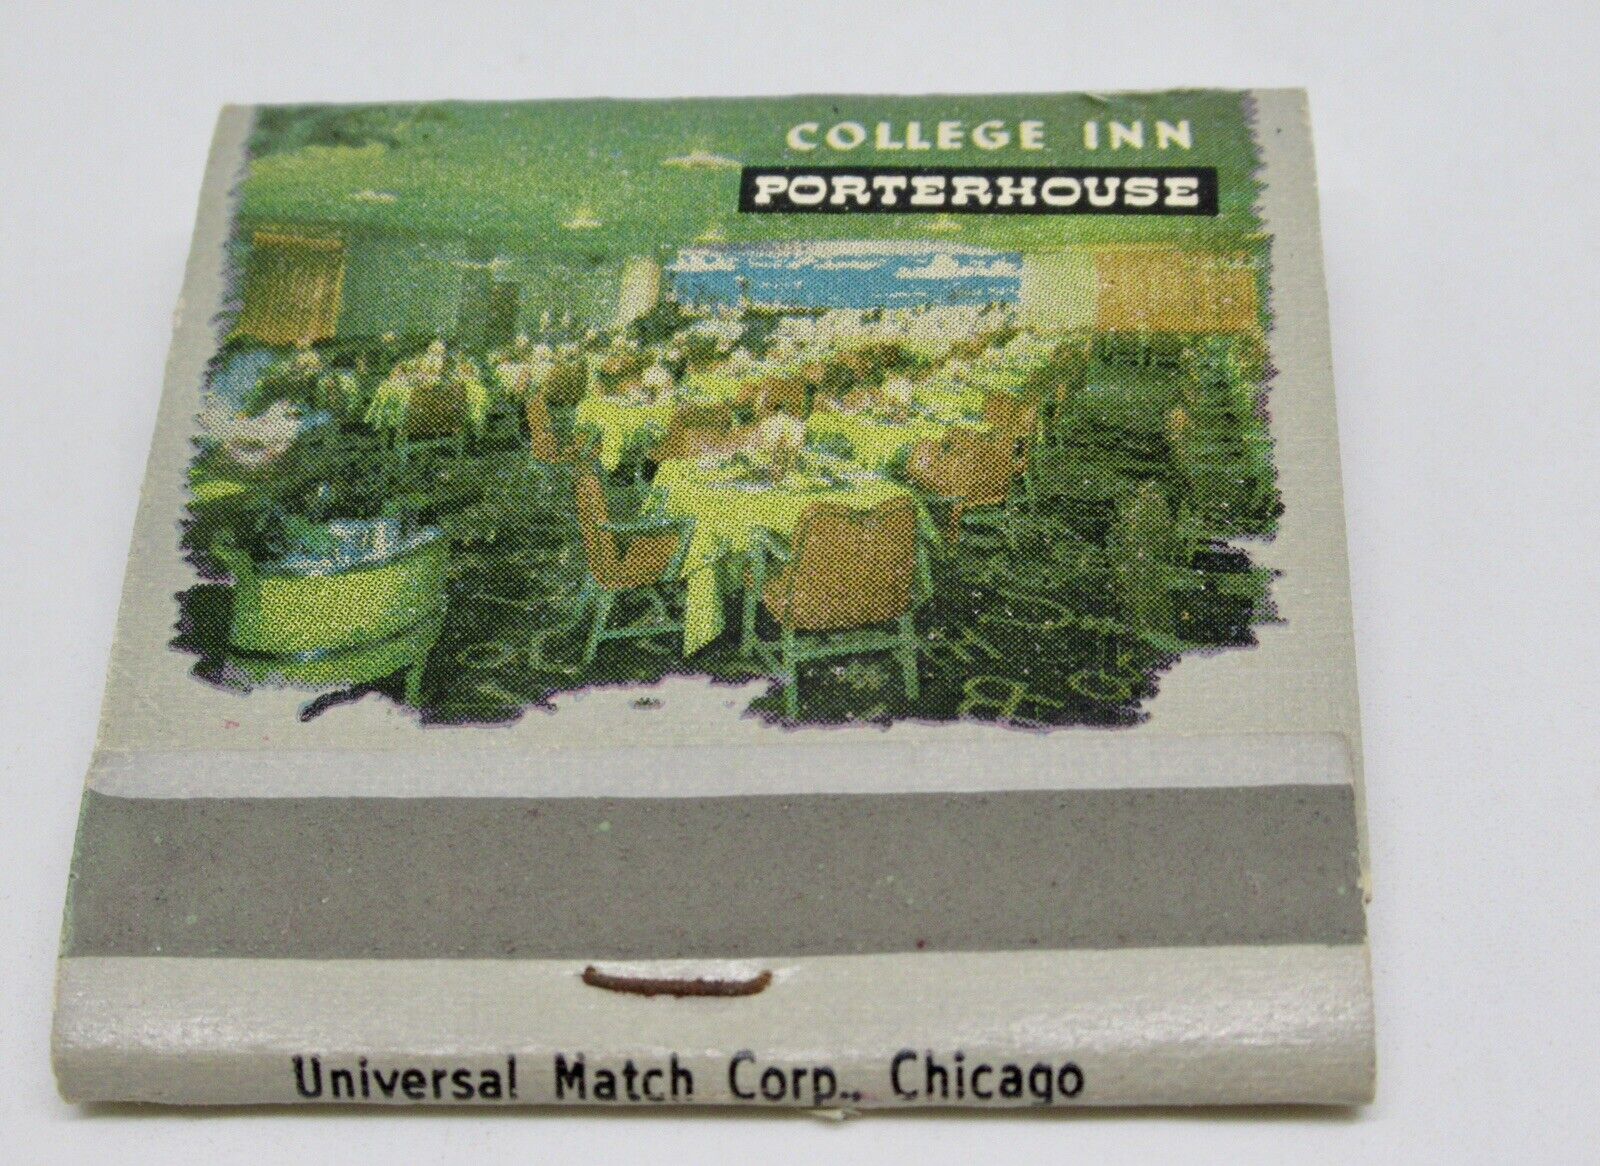 College Inn Porterhouse Restaurant The Sherman Hotel Chicago FULL Matchbook